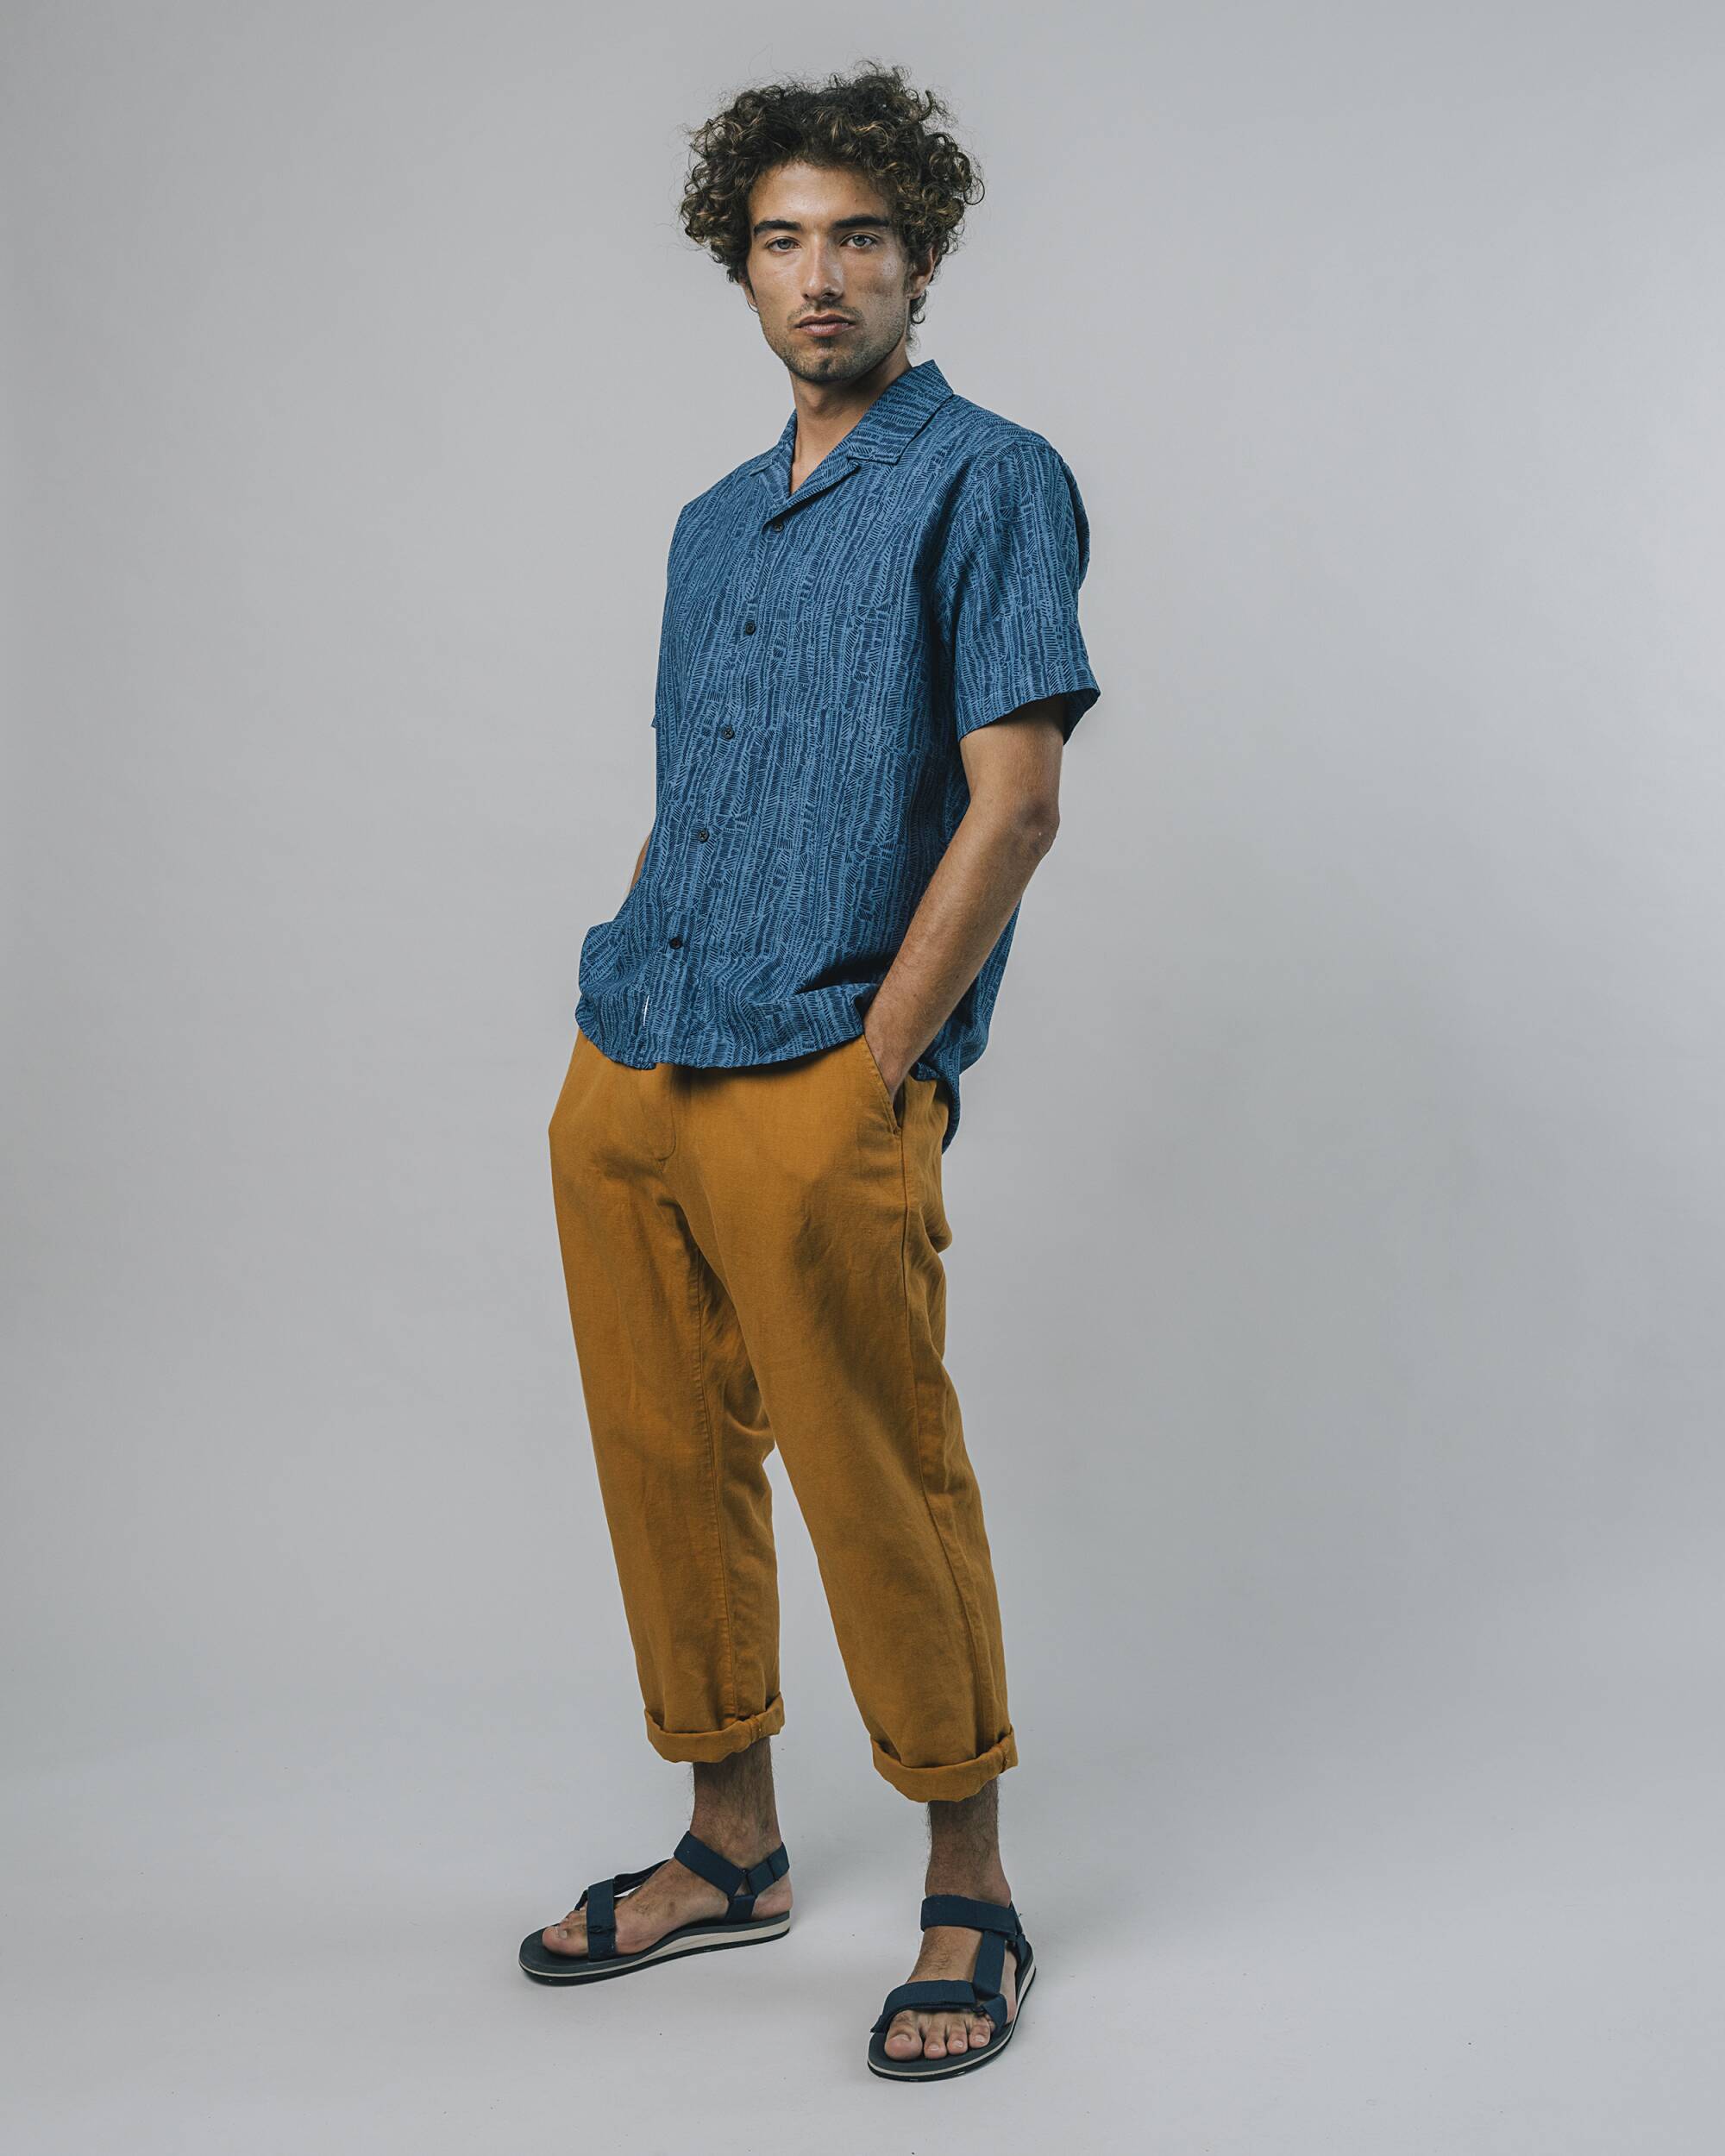 Kurzärmliges Hemd "Camou" in blau aus 100% Bio - Baumwolle von Brava Fabrics